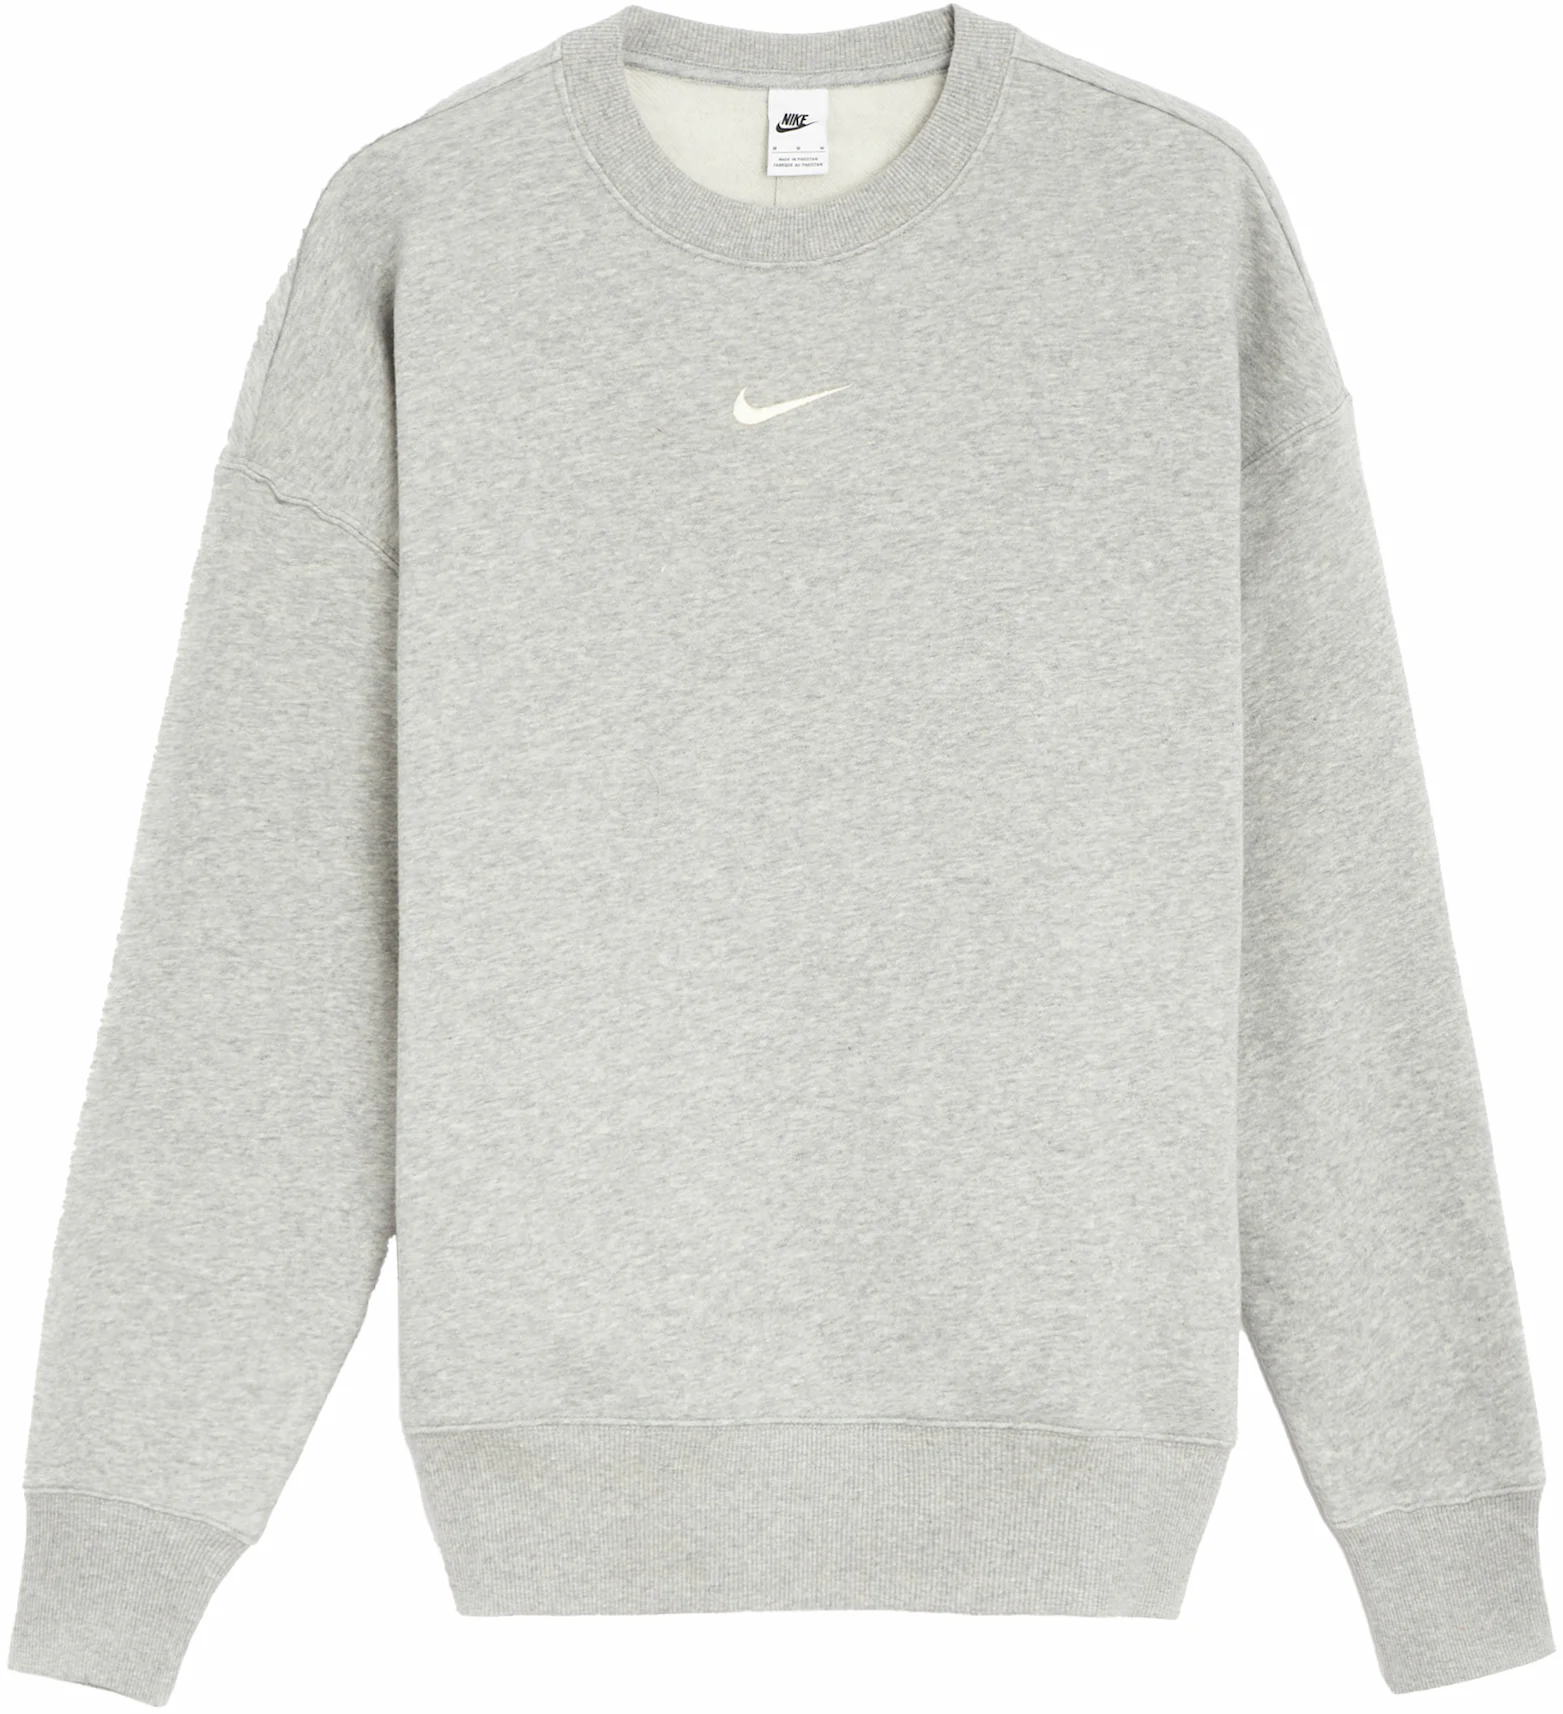 Nike Women's Phoenix Fleece Oversized Crewneck Sweatshirt Grey - FW23 - US